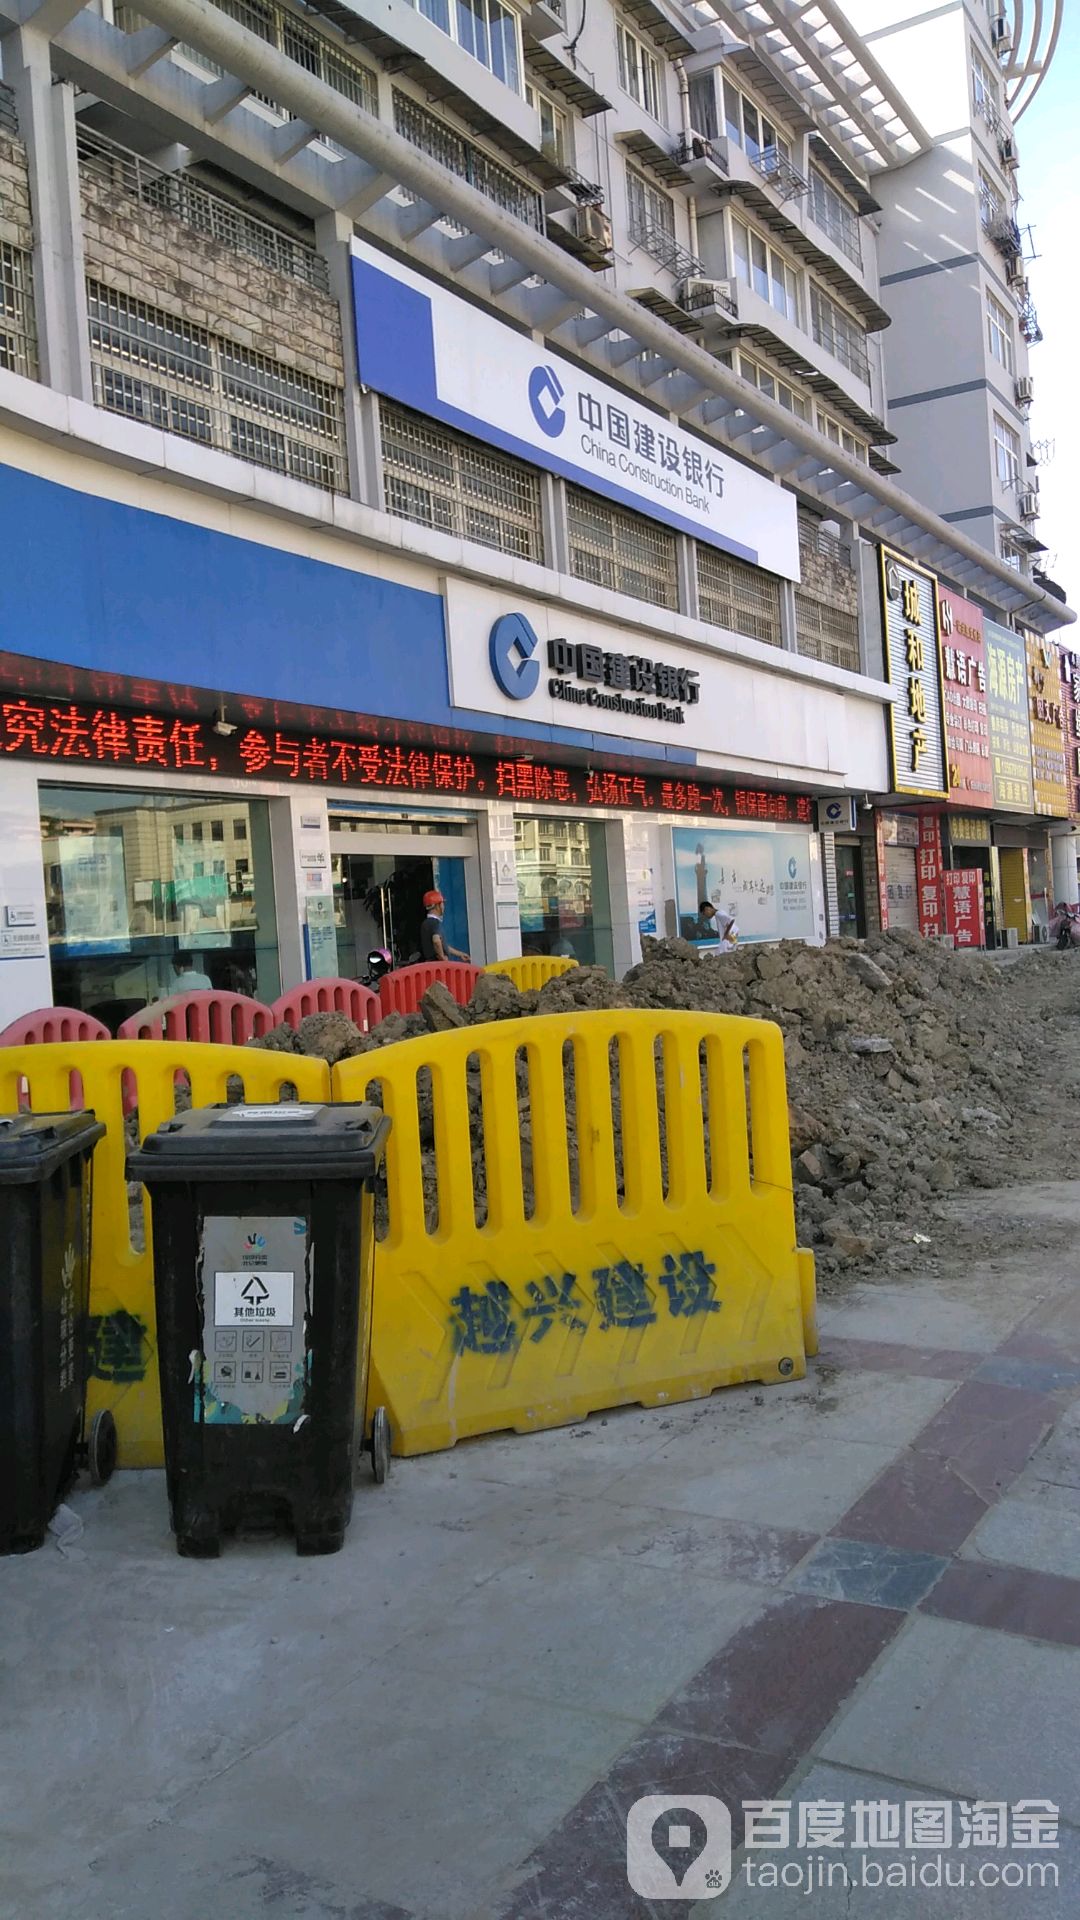 中國建設銀行24小時自助銀行(寧波經濟技術開發區支行)